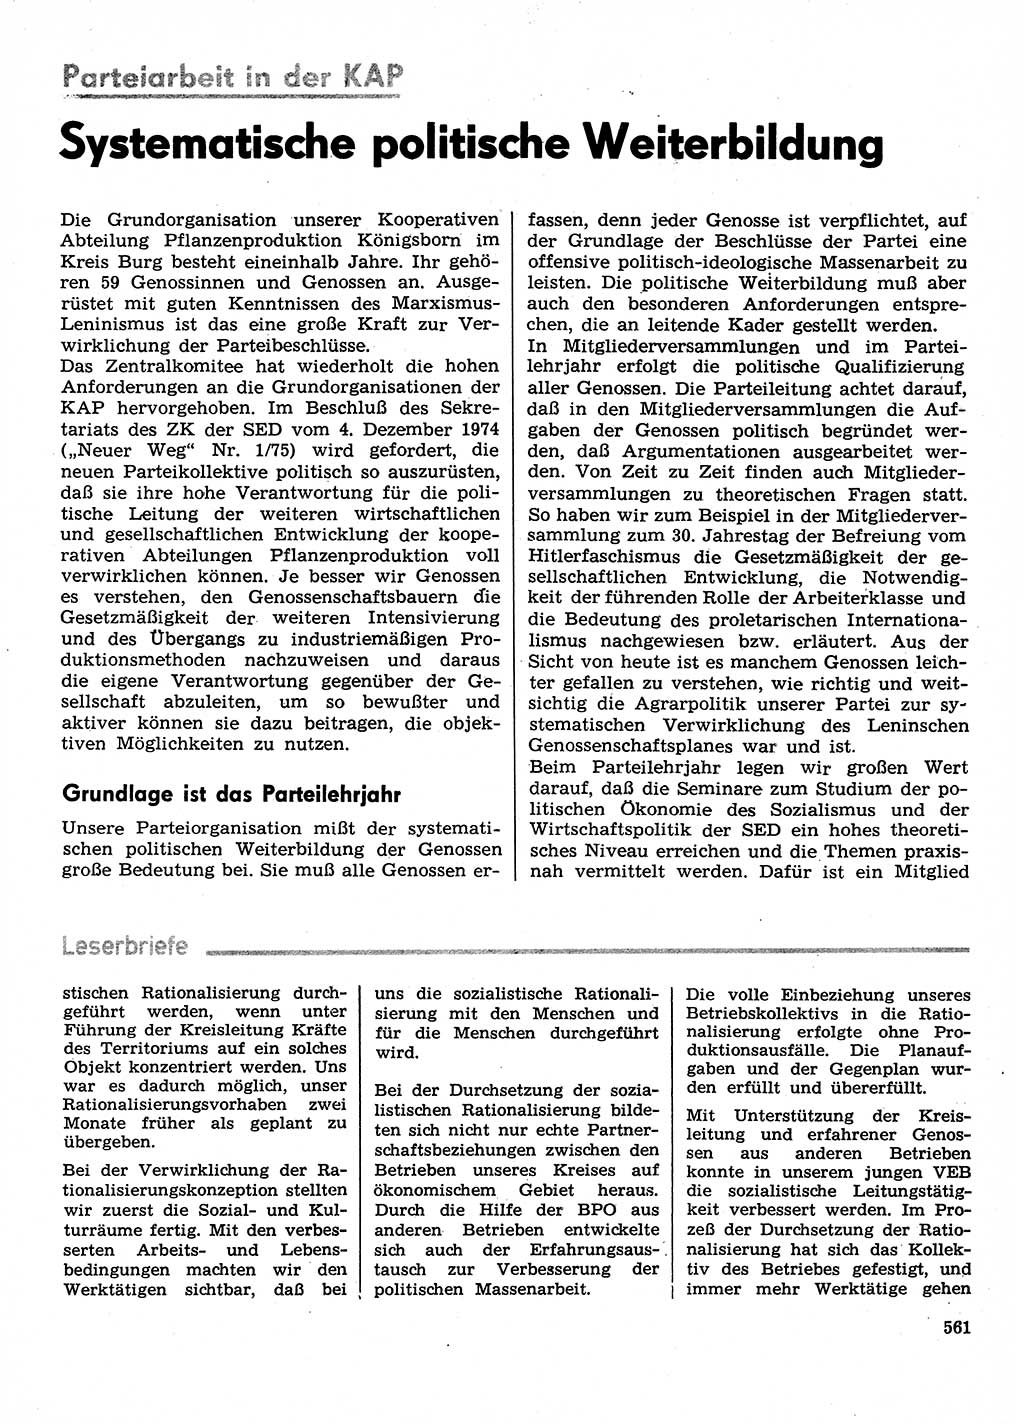 Neuer Weg (NW), Organ des Zentralkomitees (ZK) der SED (Sozialistische Einheitspartei Deutschlands) fÃ¼r Fragen des Parteilebens, 30. Jahrgang [Deutsche Demokratische Republik (DDR)] 1975, Seite 561 (NW ZK SED DDR 1975, S. 561)